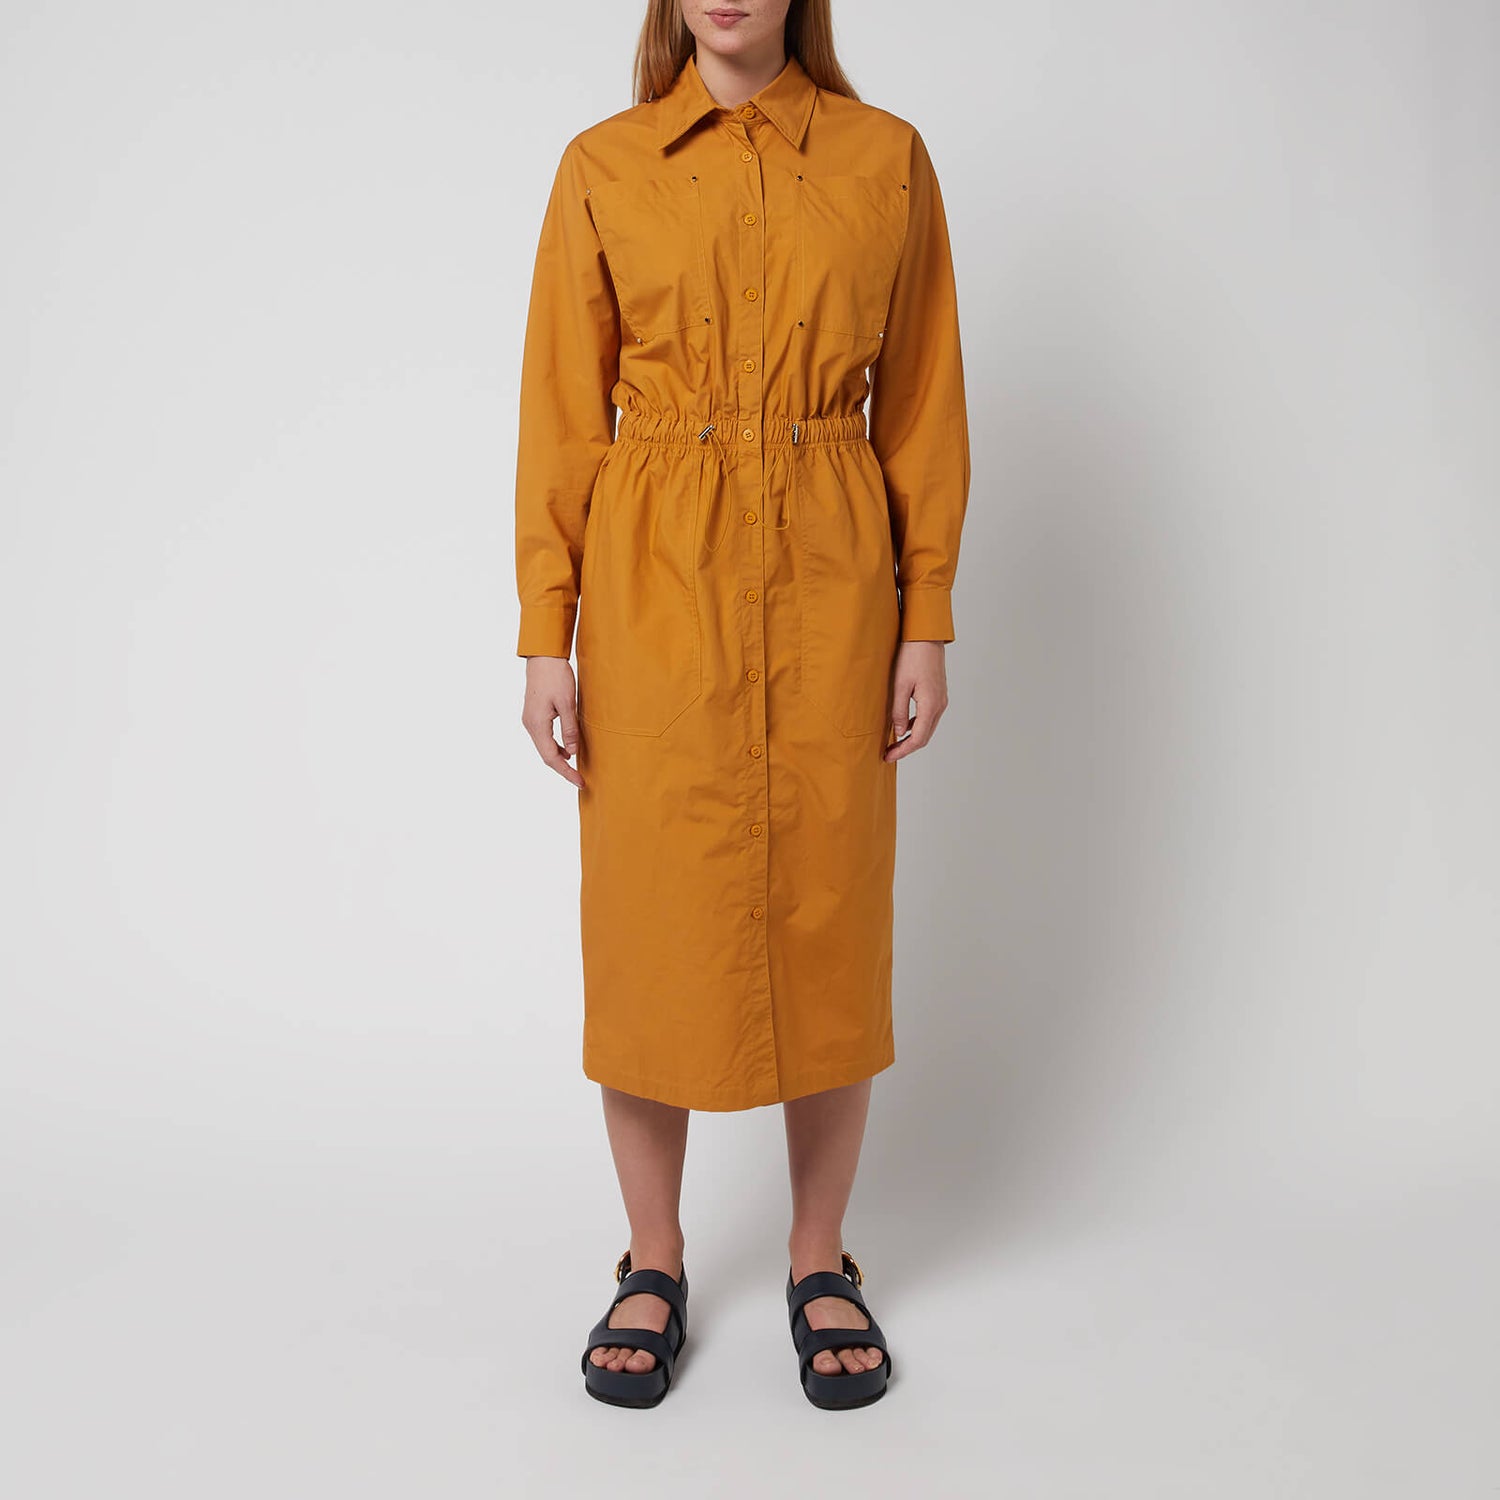 L.F Markey Women's Remi Dress - Mustard - UK 10